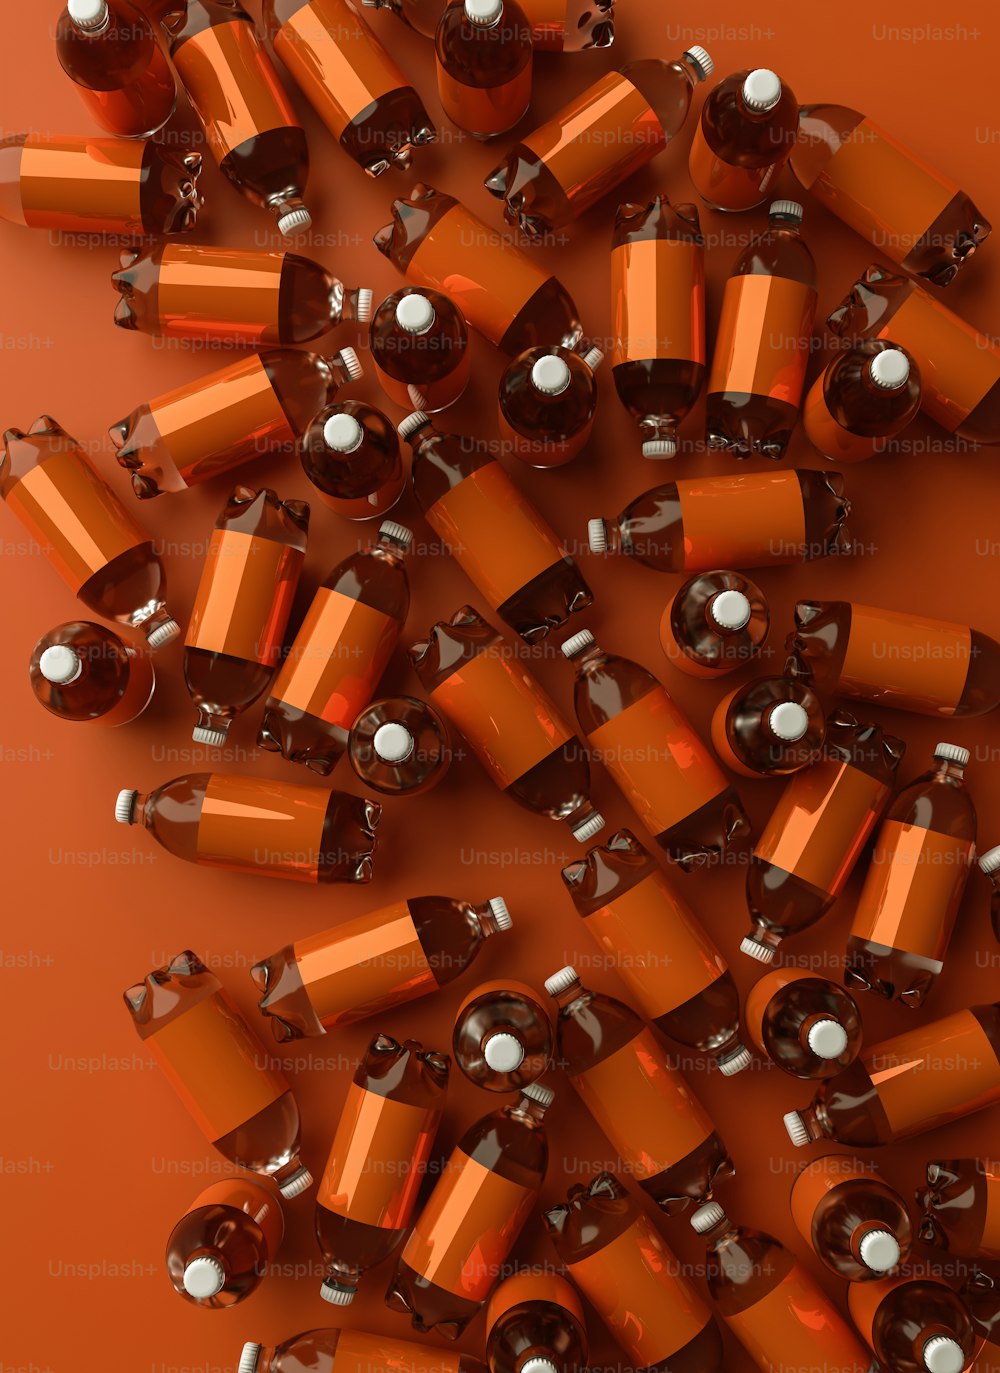 Una pila de baterías naranjas y plateadas sobre un fondo naranja